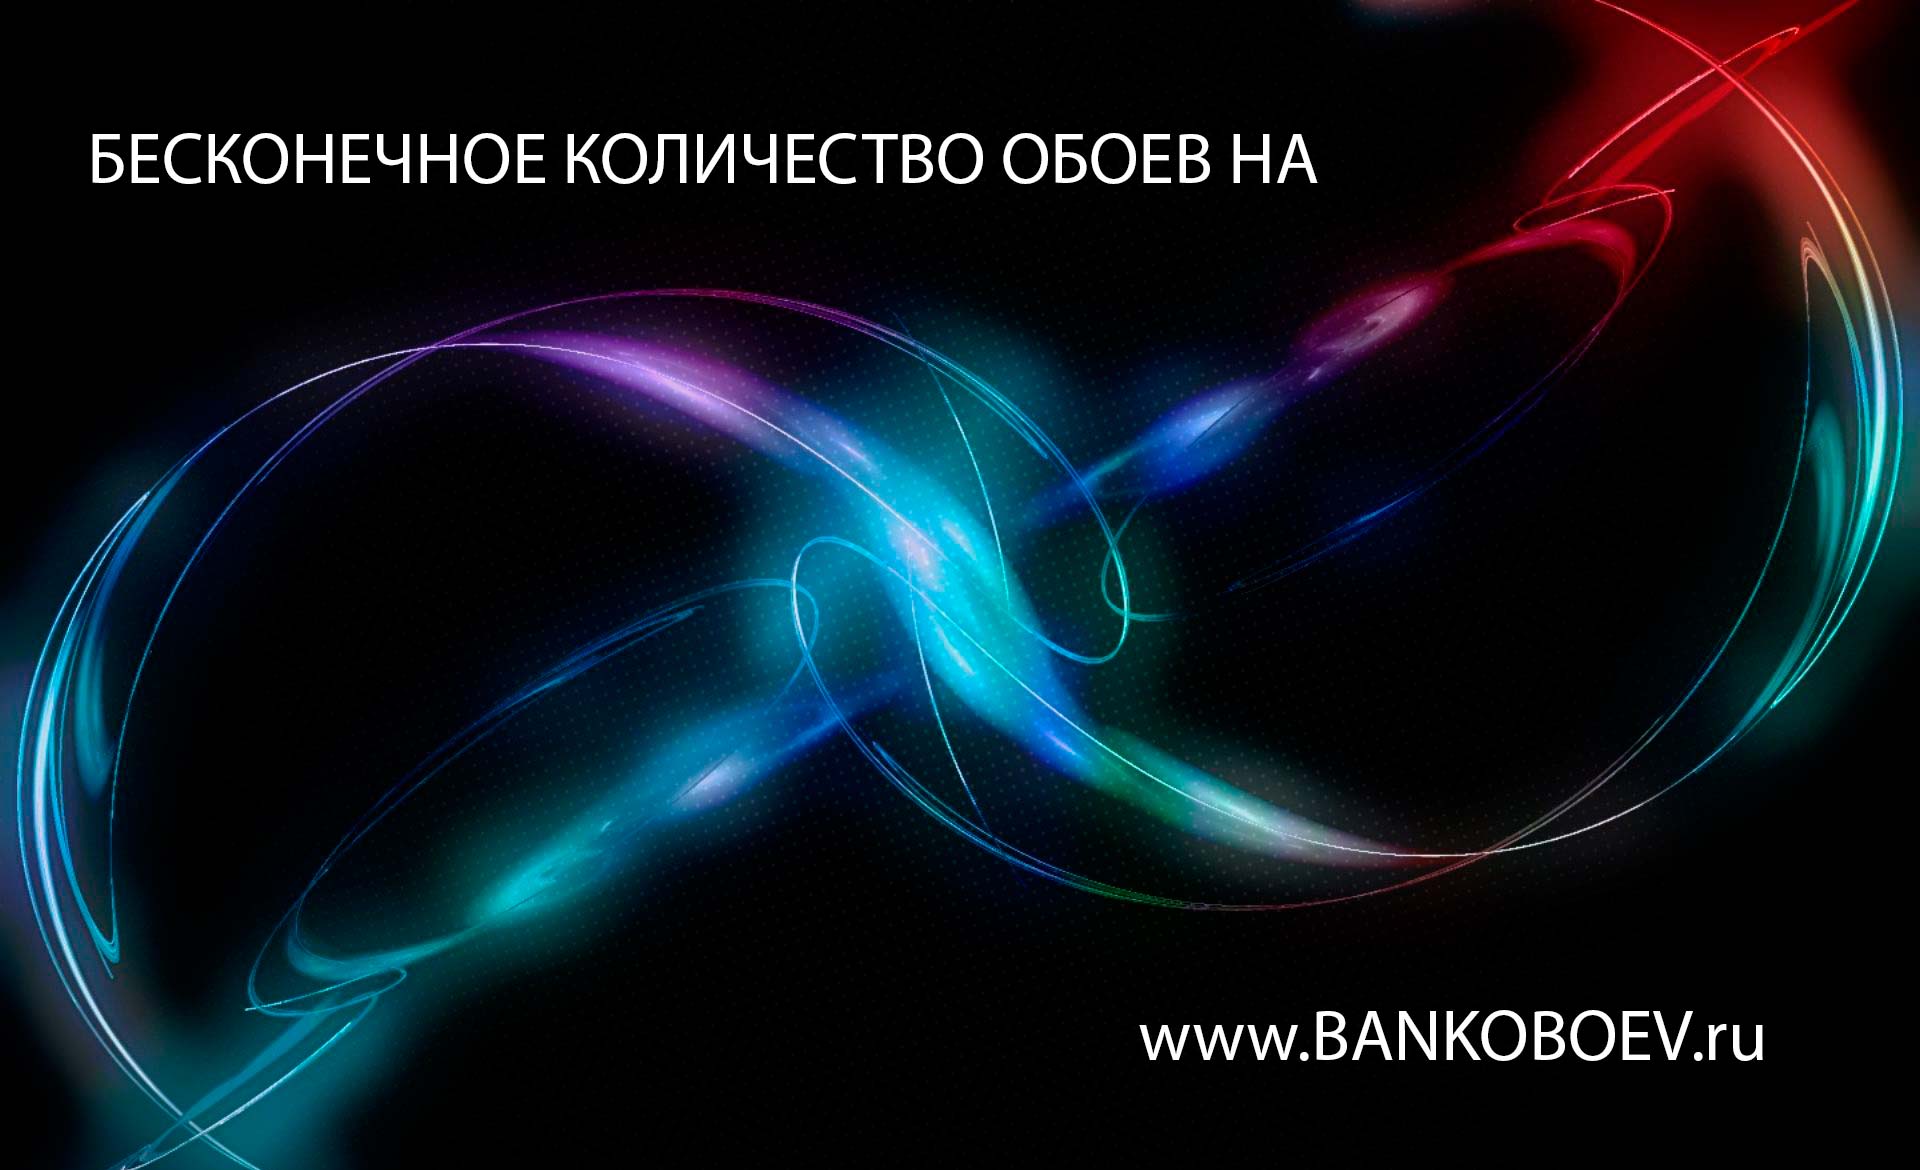 Bankoboev Ru Image Nzi3nja Jpg